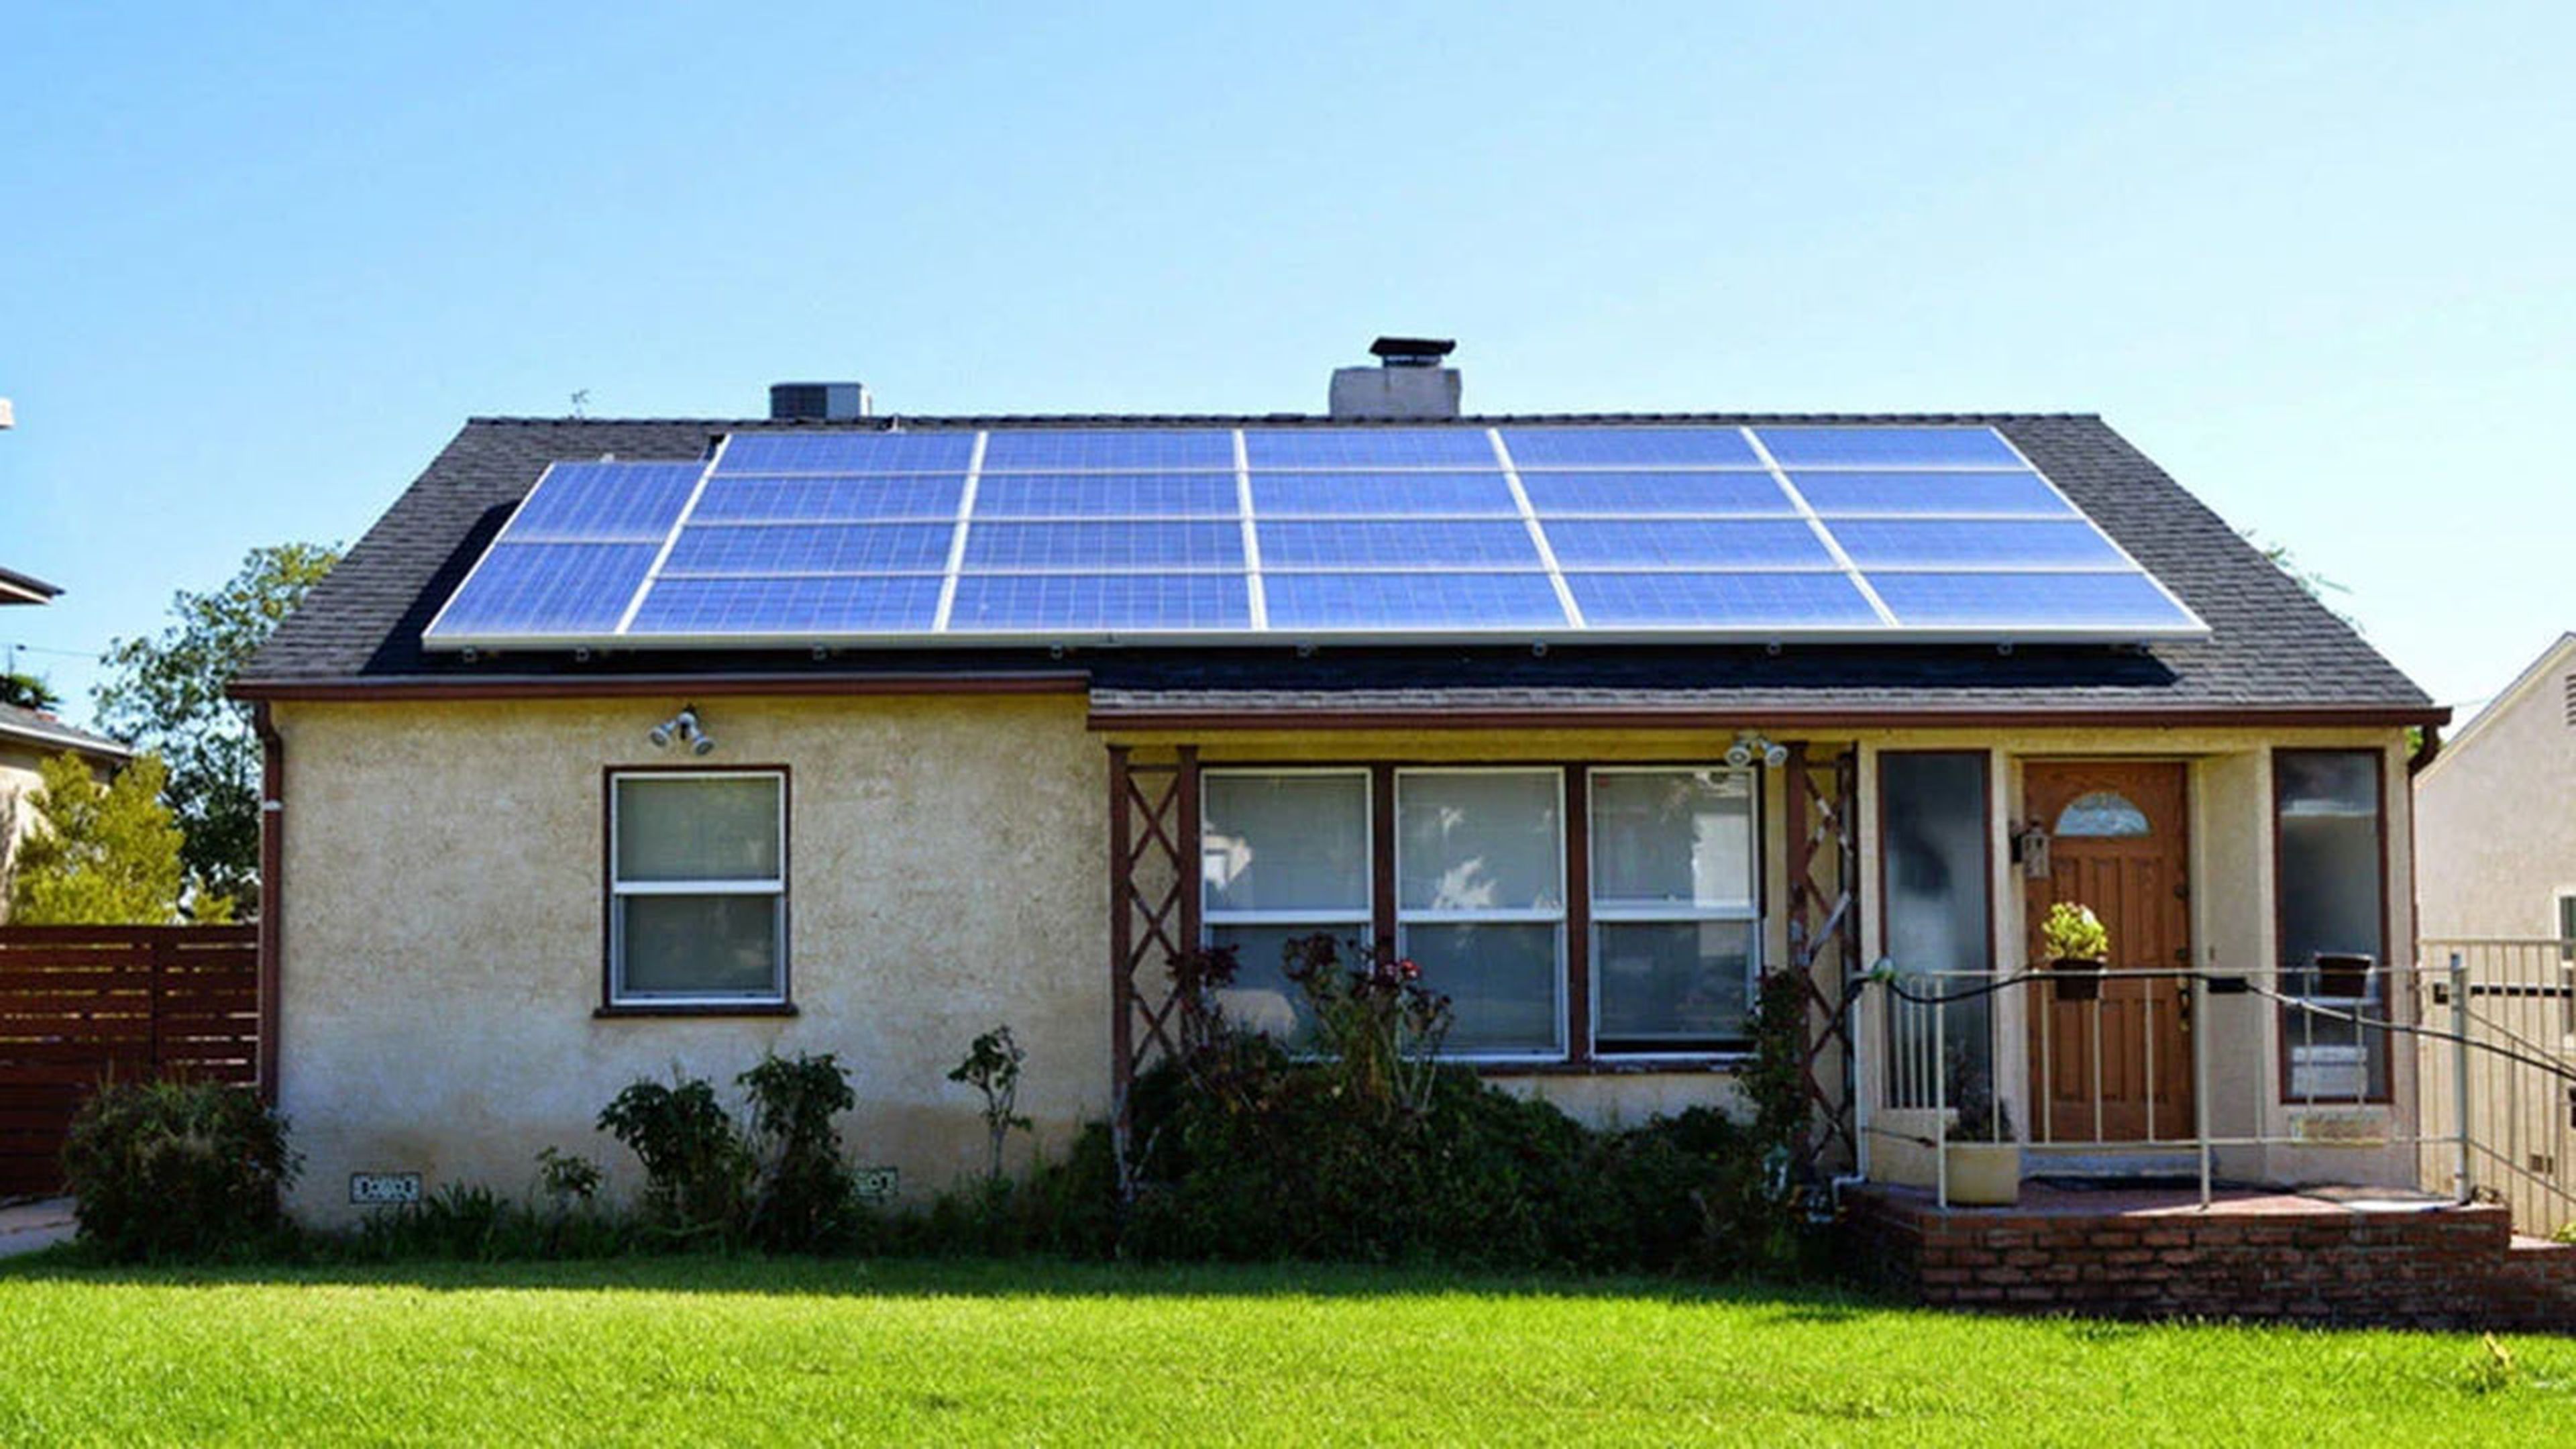 paneles solares en casas